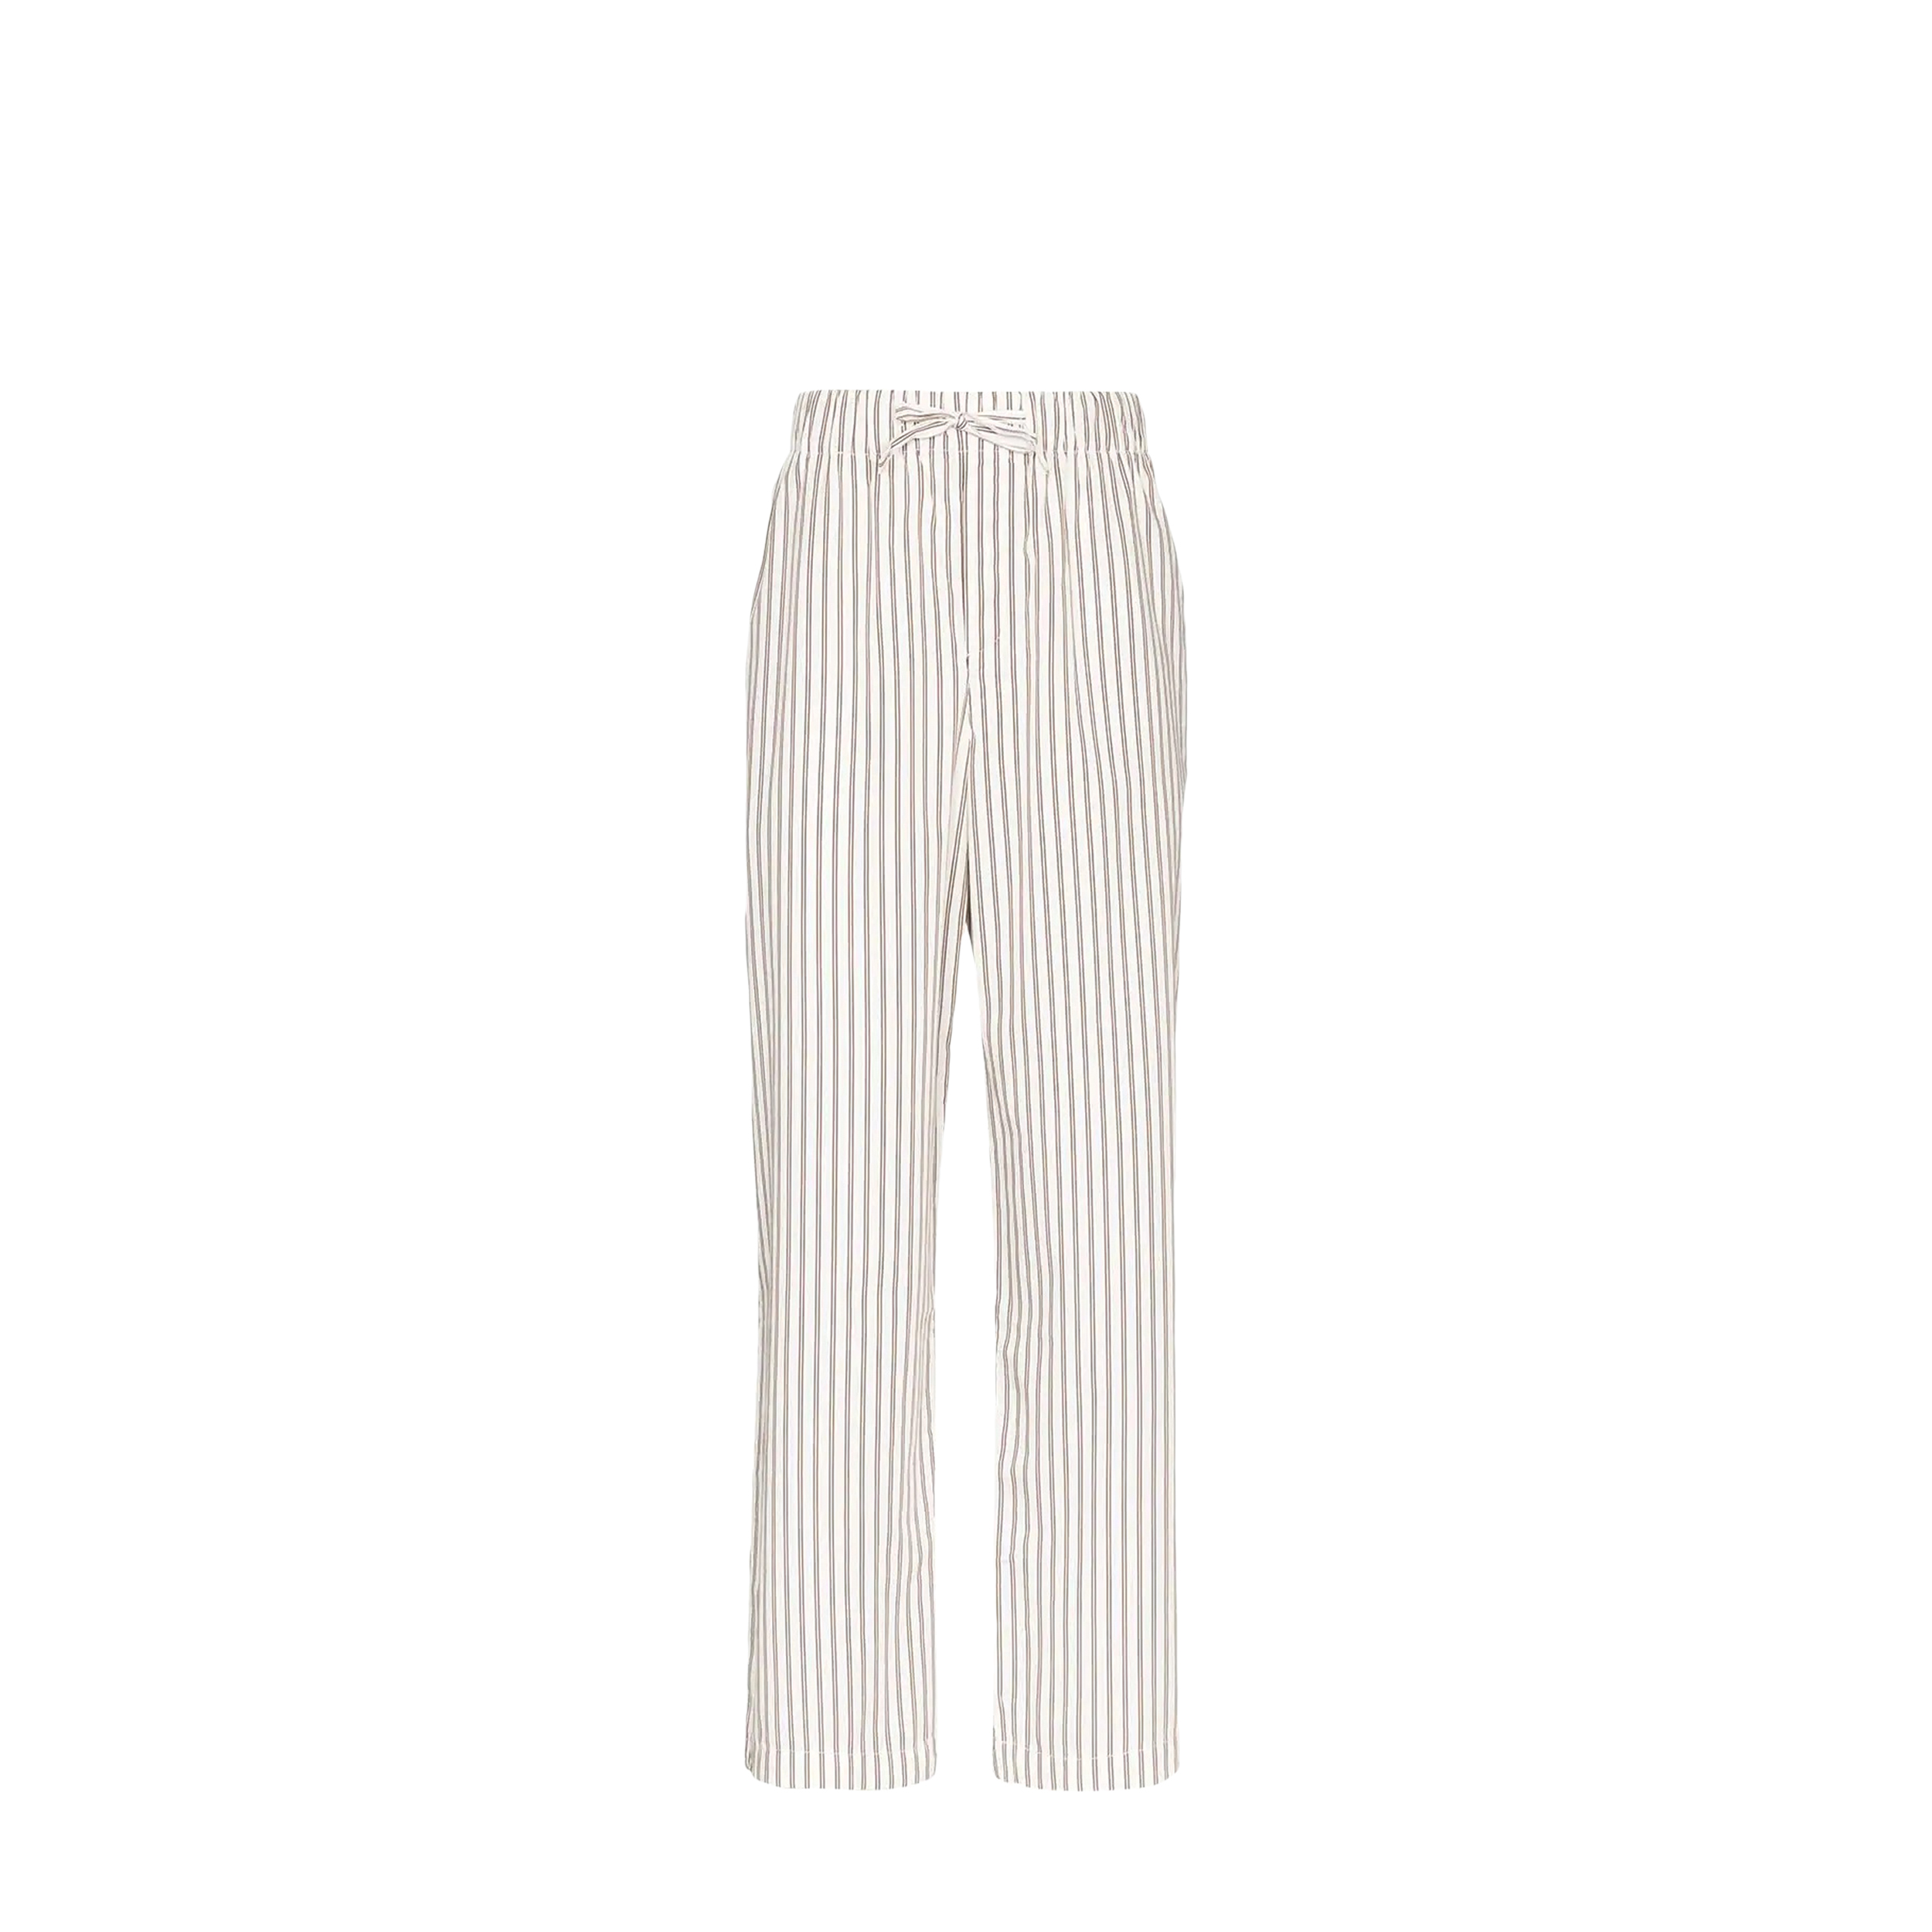 Tekla Tekla Poplin Pyjamas Pants White & Brown Striped (L)